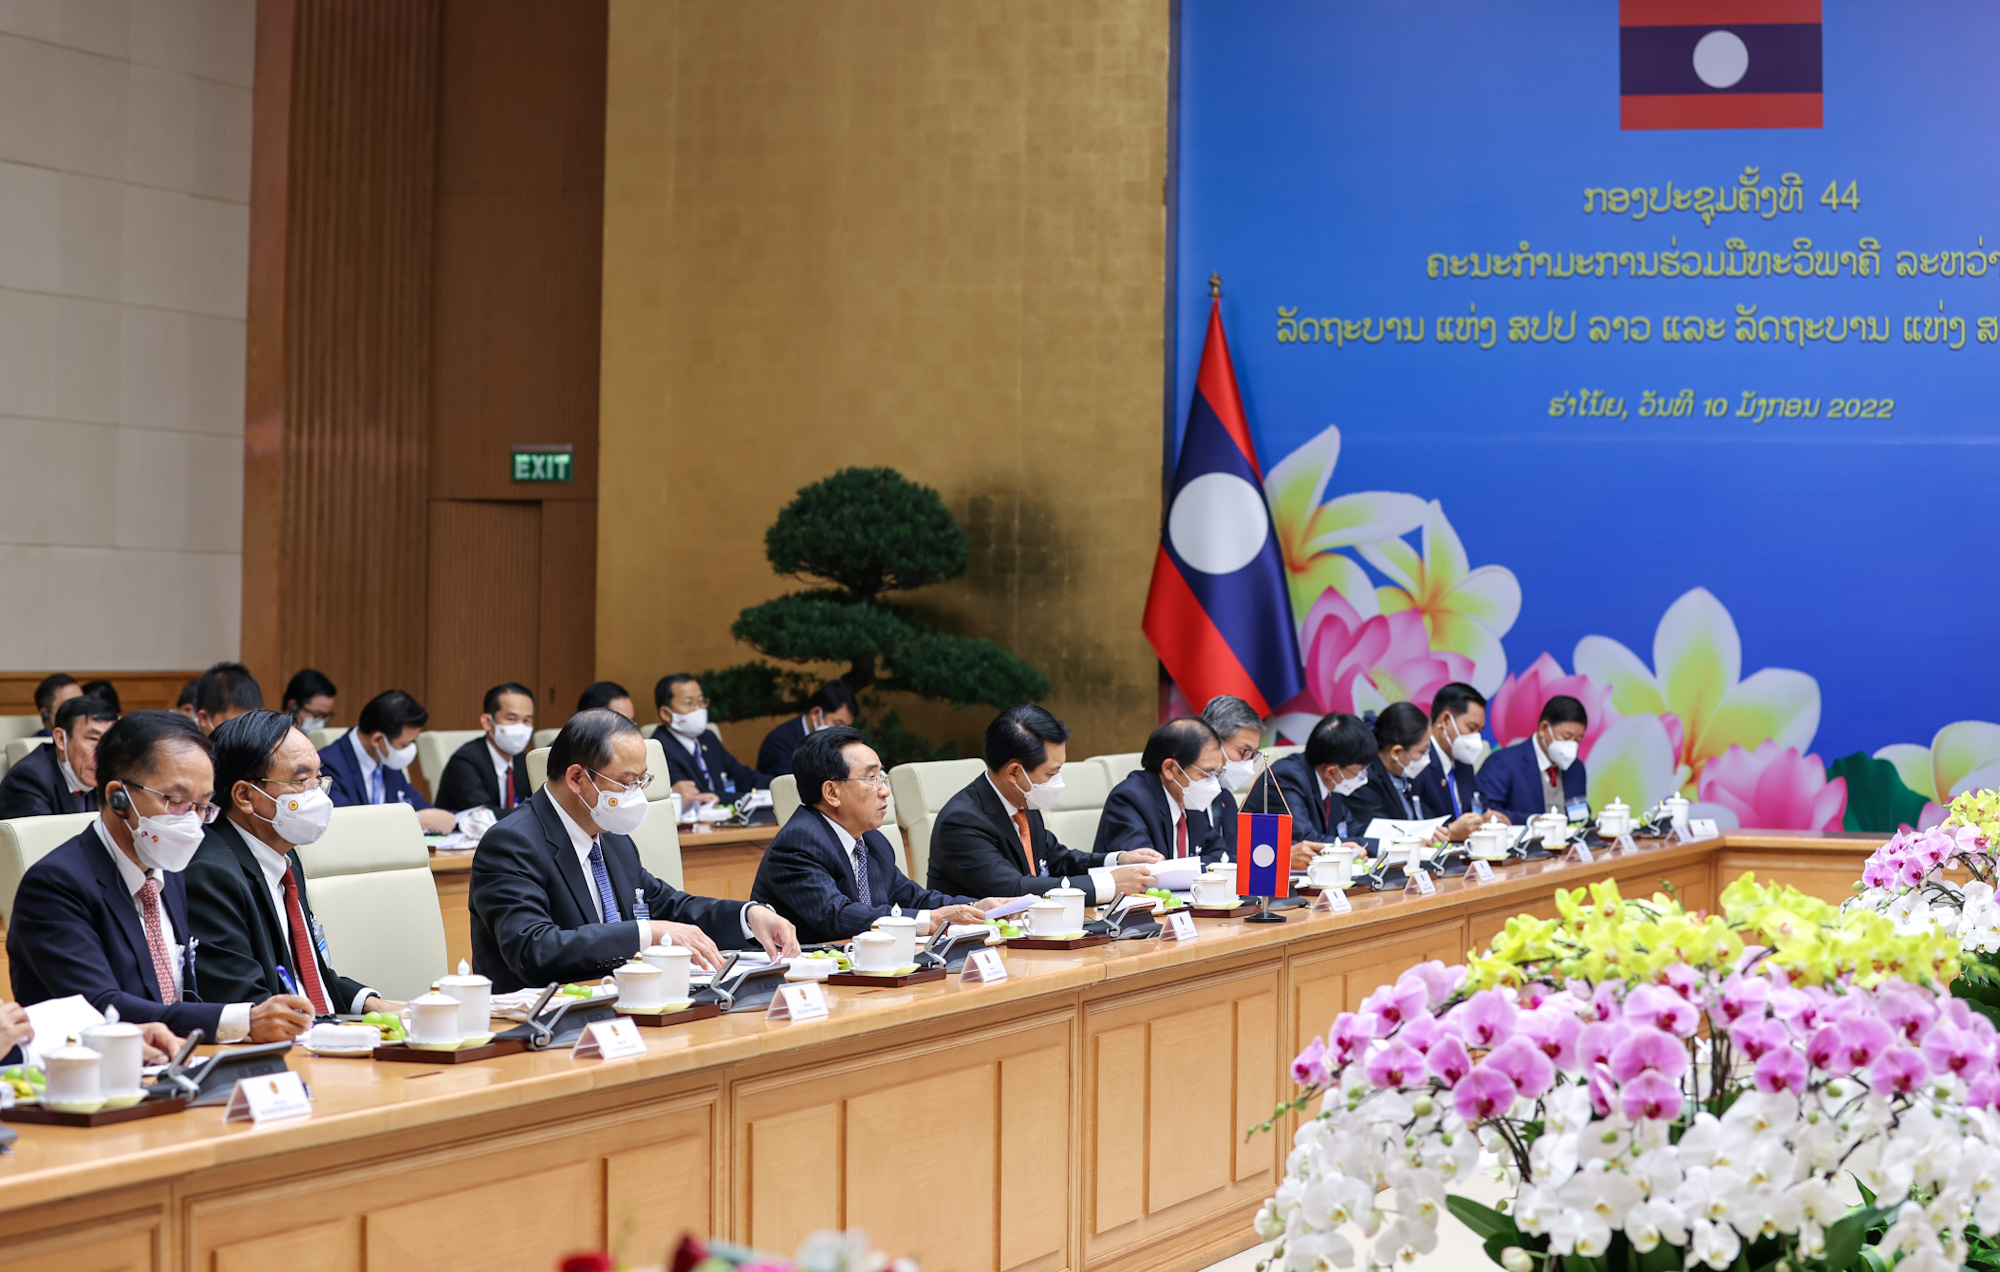 Chùm ảnh: Kỳ họp lần thứ 44 Ủy ban liên Chính phủ về hợp tác song phương Việt Nam-Lào - Ảnh 4.